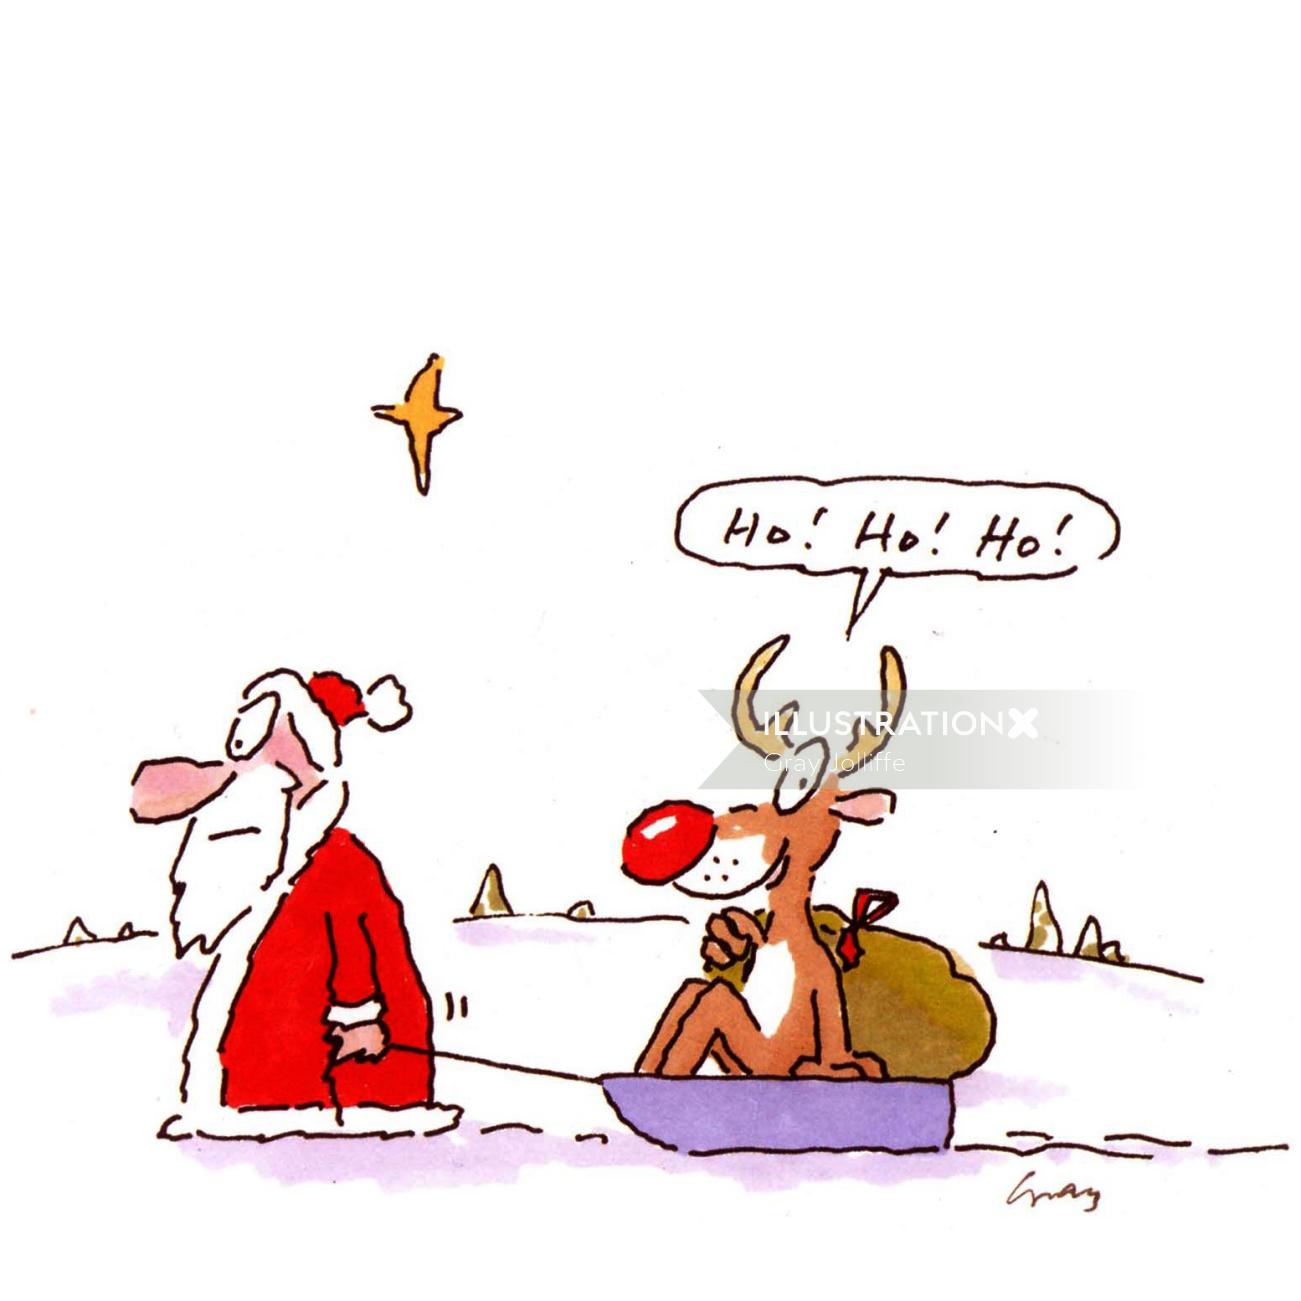 Papai Noel puxando renas no trenó - ilustração dos desenhos animados por Gray Jolliffe